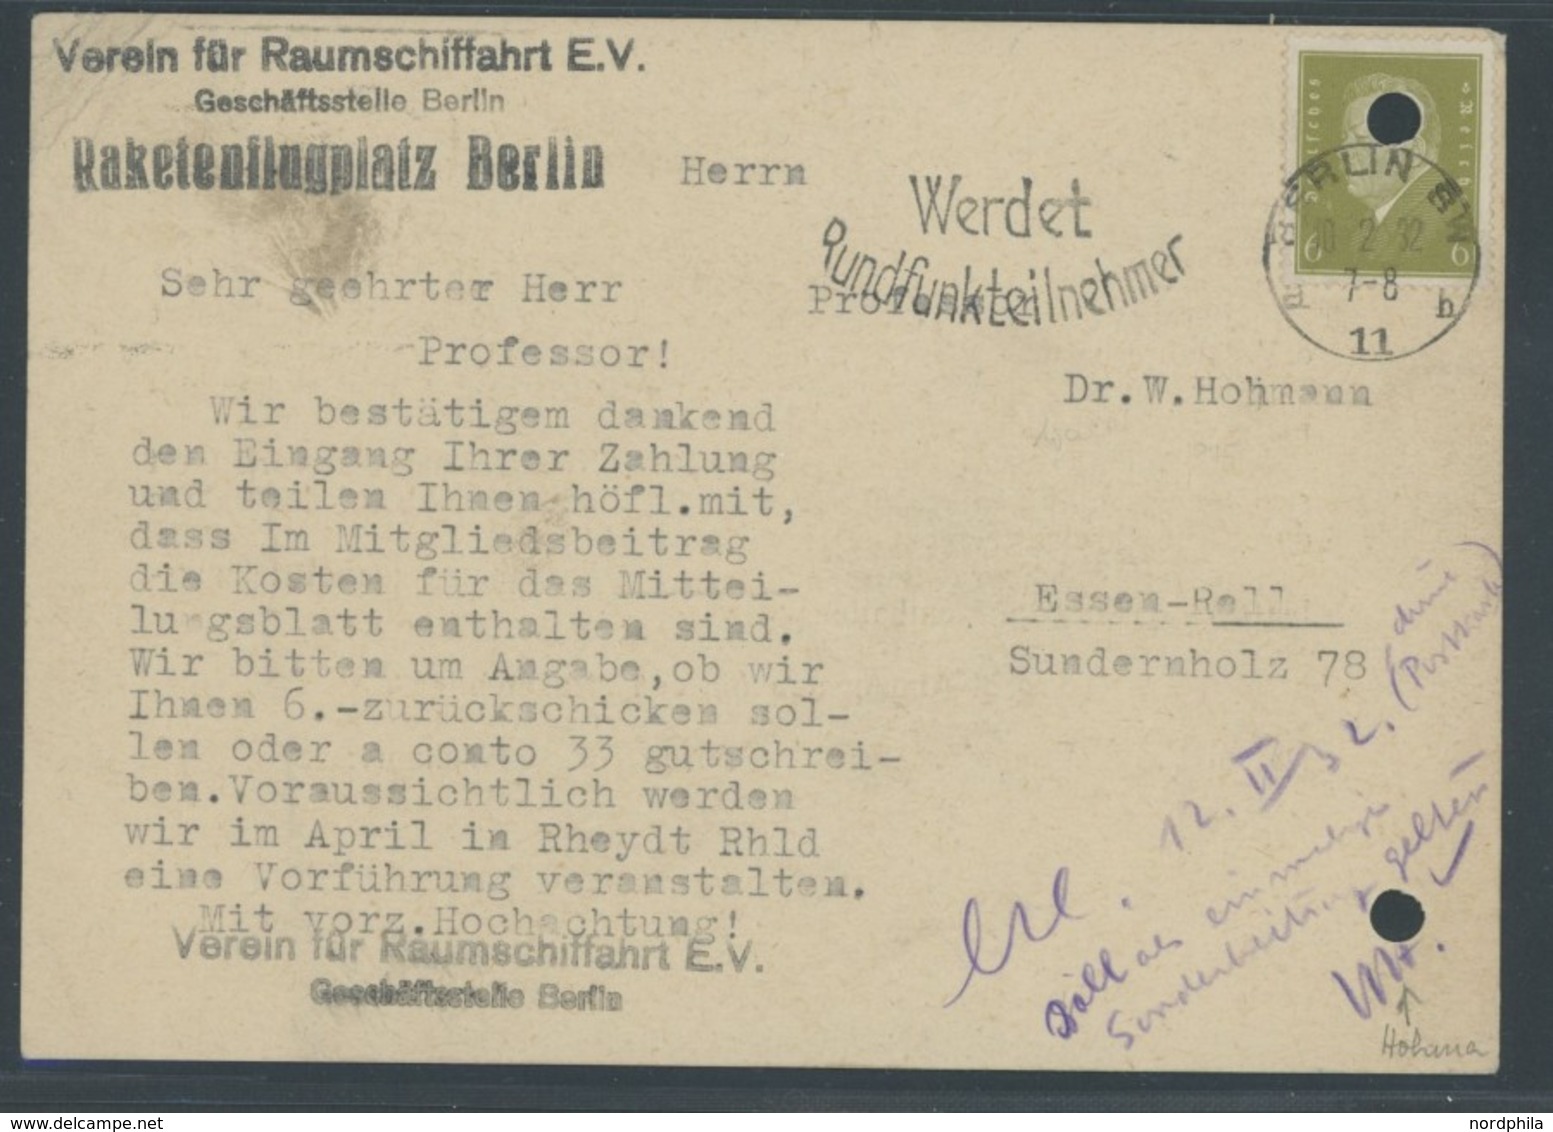 RAKETENPOST 10.2.1932, Beitrittserklärung Des Vereins Für Raumschifffahrt, Raketenflugplatz Berlin, Als Geldeingangsbest - Aviones